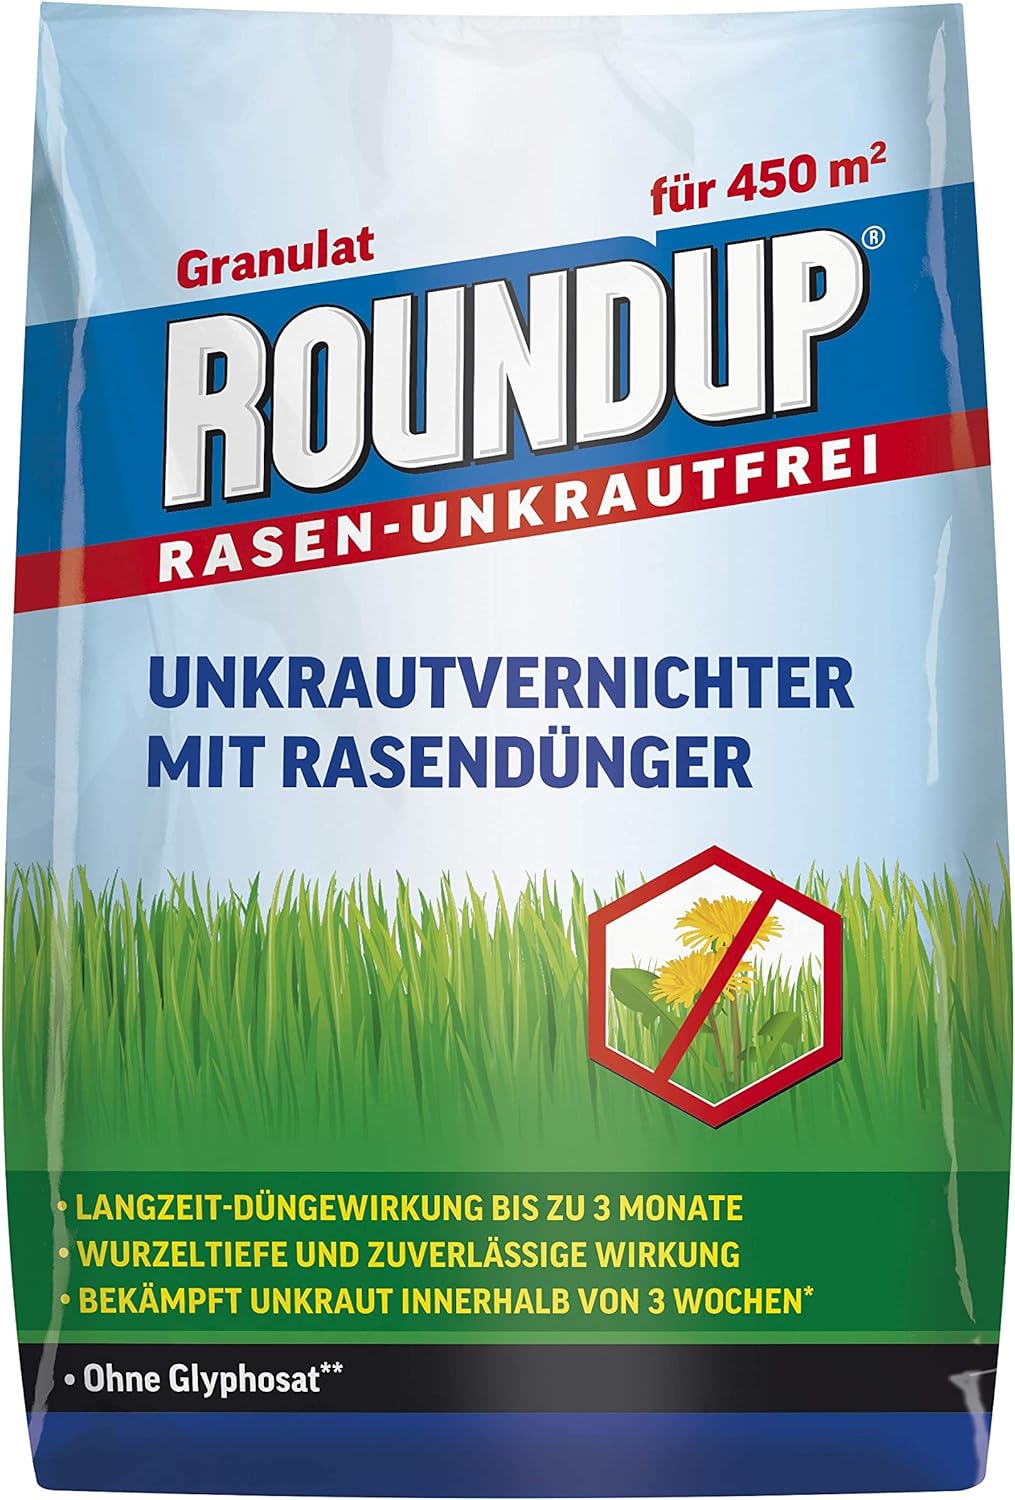 Roundup Rasen-Unkrautfrei Rasendünger, 2in1, Unkrautvernichter plus Dünger mit 100 Tage Langzeitwirkung, 9 kg für 450 m² 